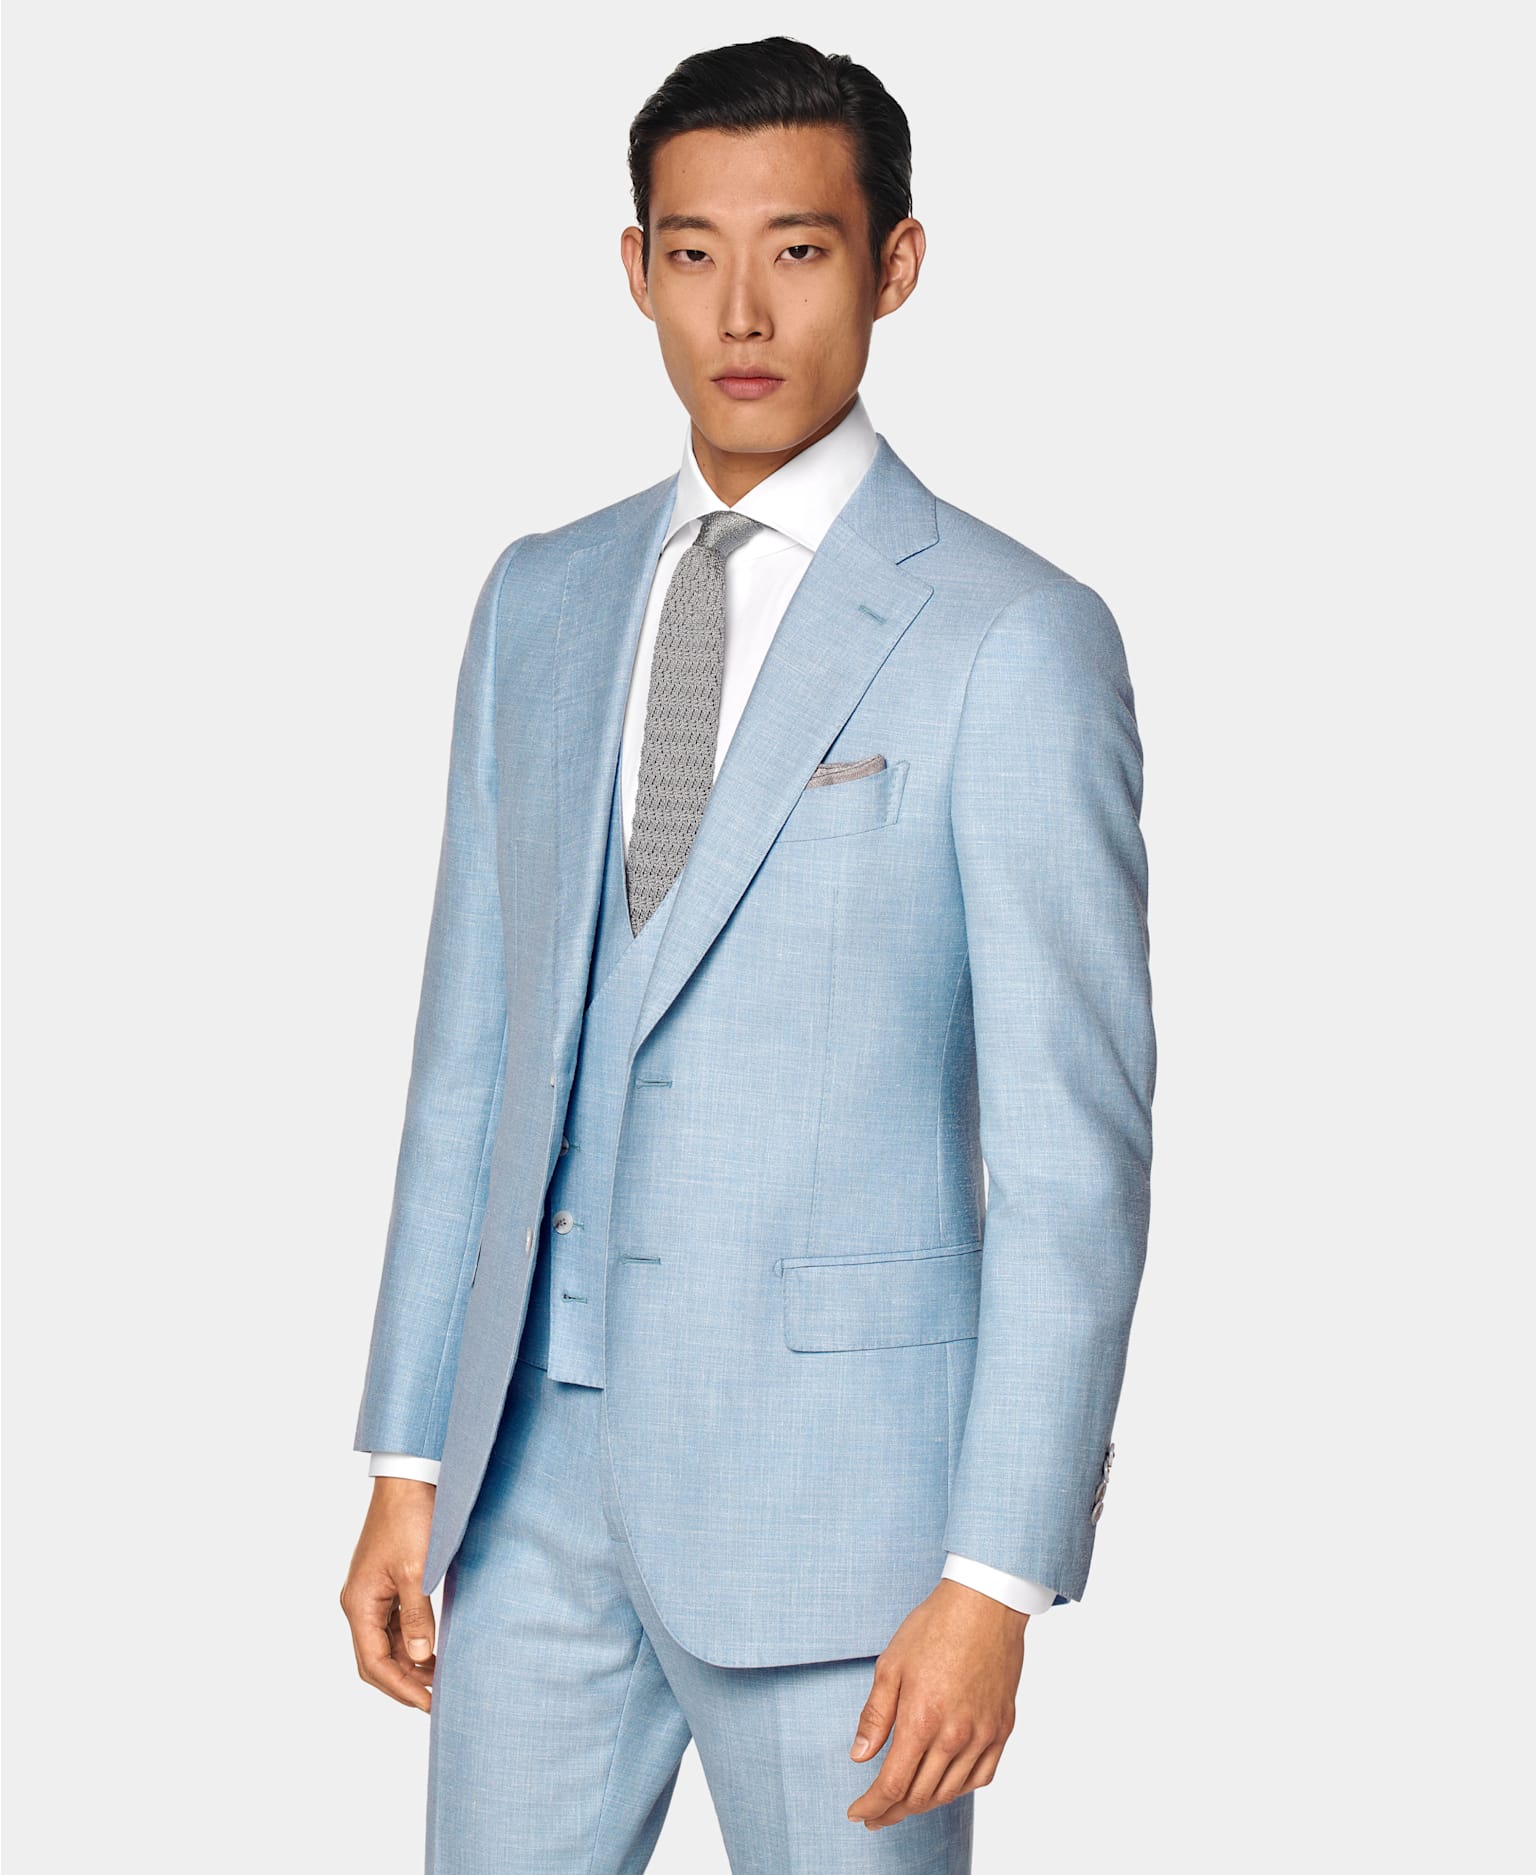 Costume 3 pièces bleu clair avec chemise blanche et cravate en maille en soie grise.